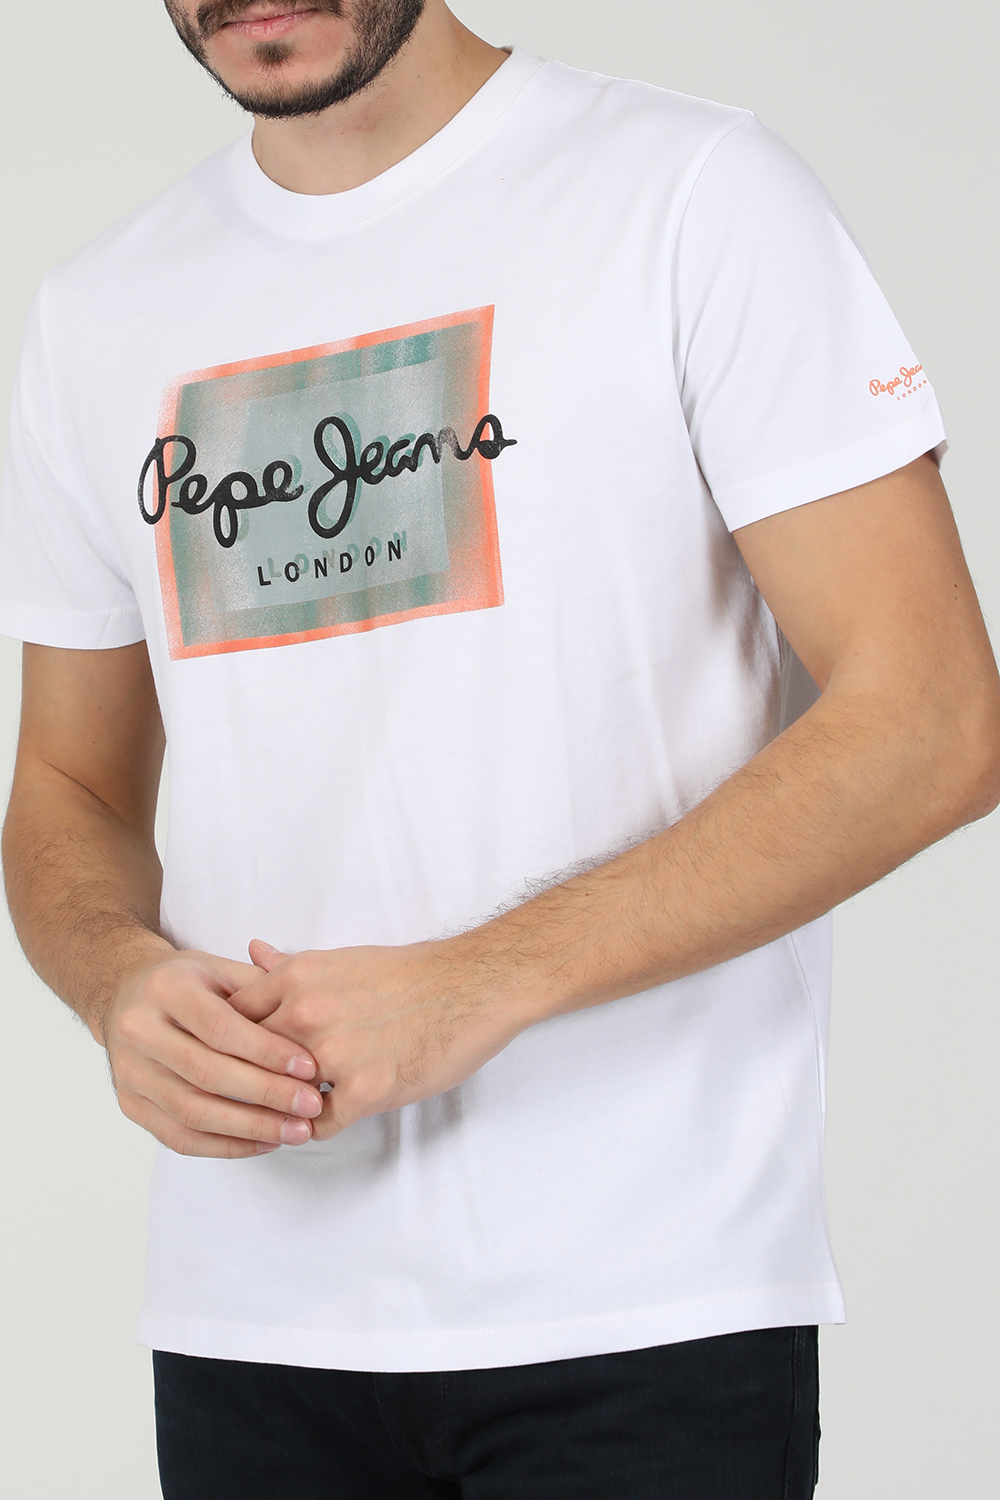 Ανδρικά/Ρούχα/Μπλούζες/Κοντομάνικες PEPE JEANS - Ανδρική κοντομάνικη μπλούζα PEPE JEANS WESLEY λευκή